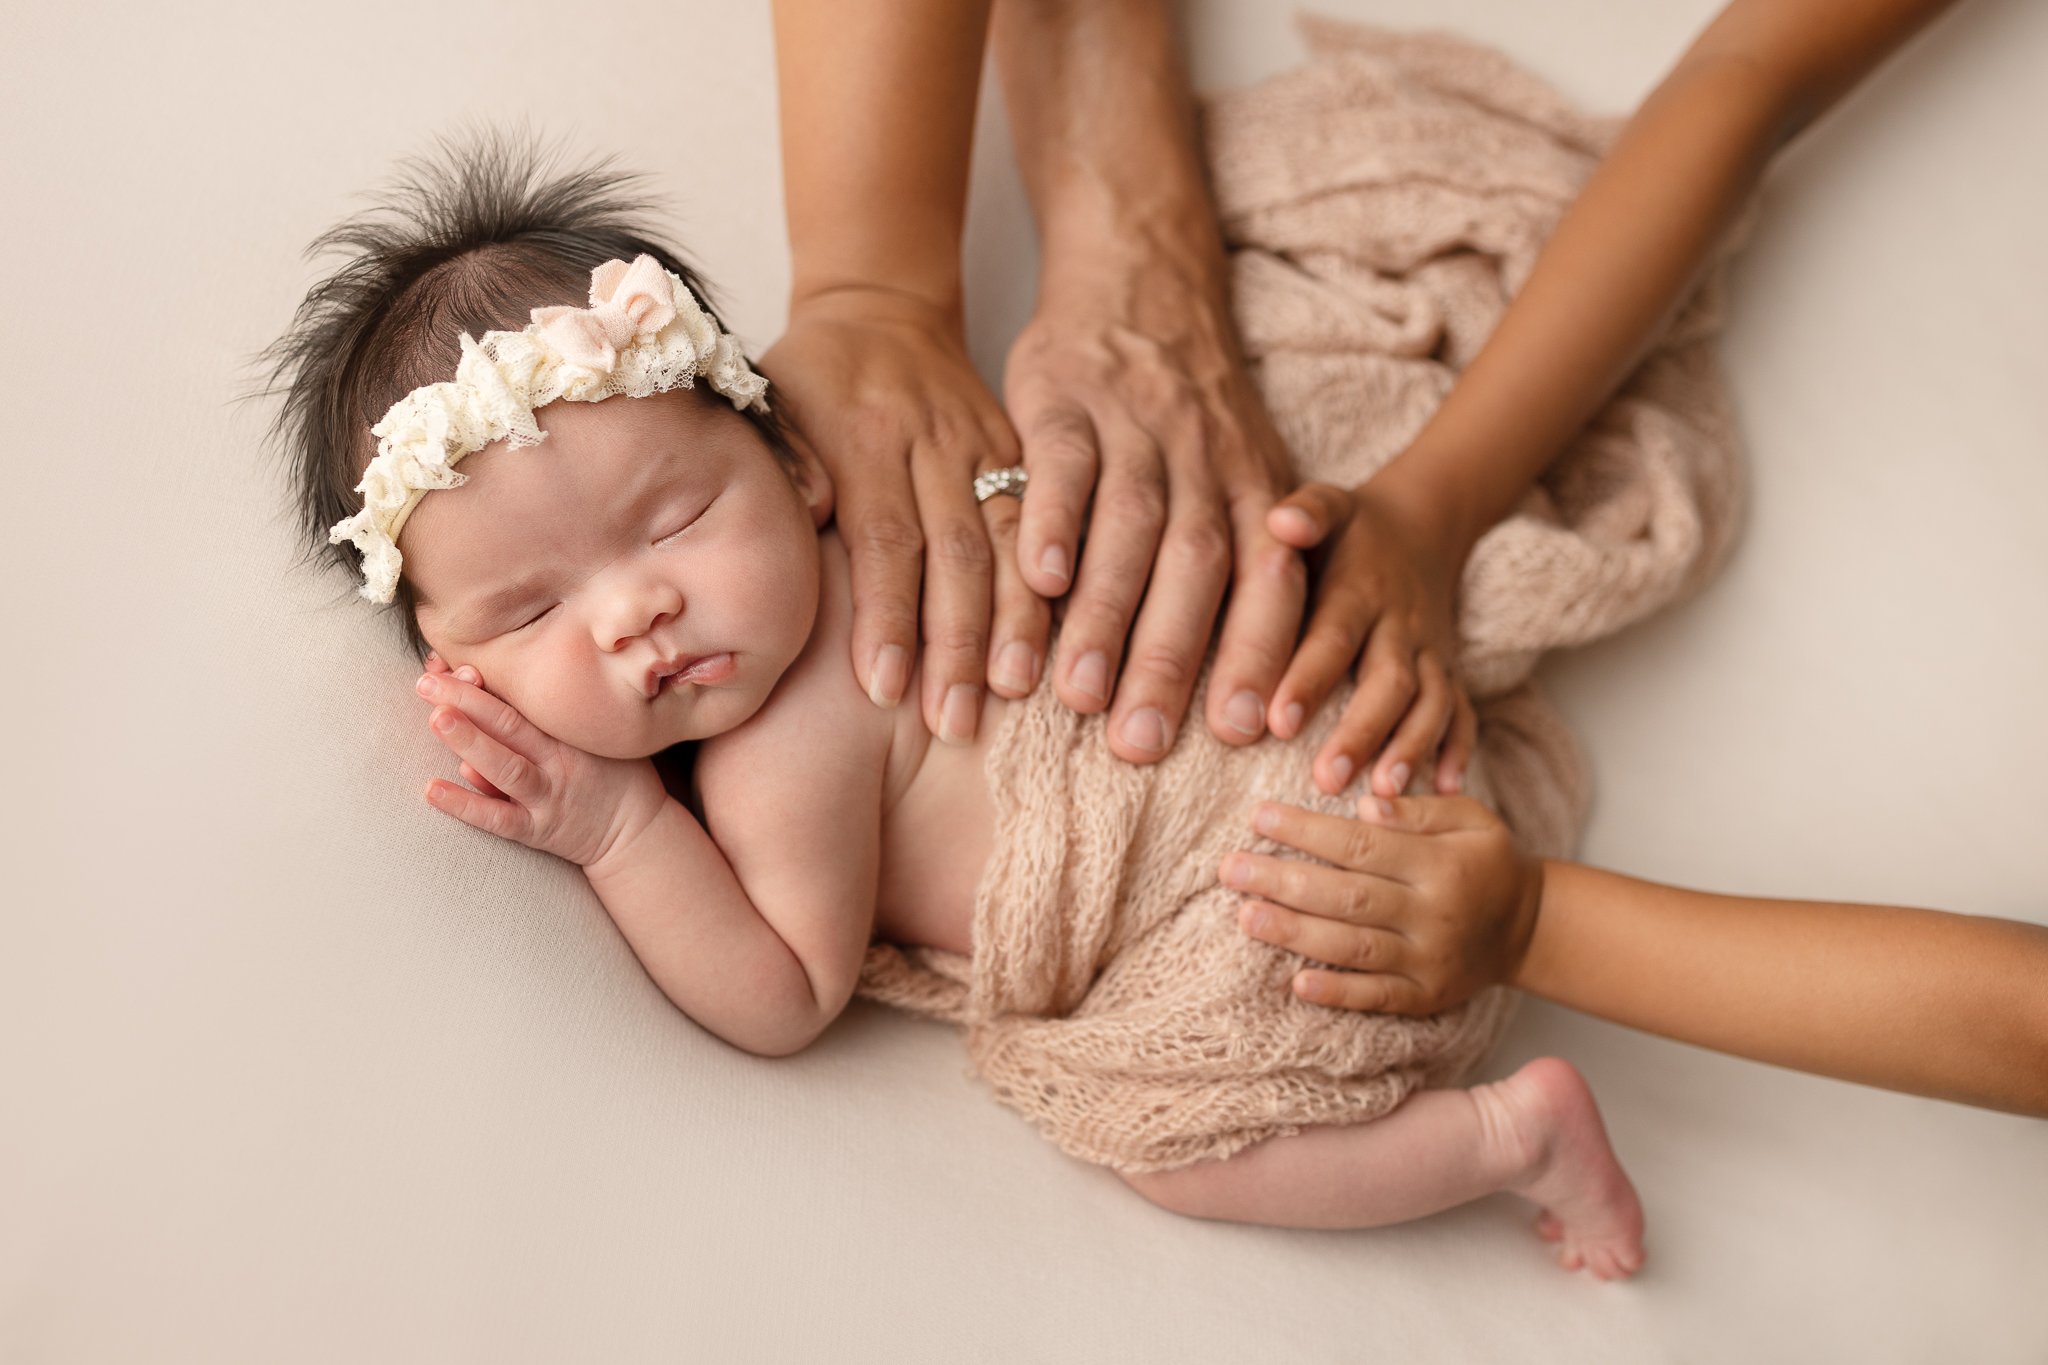 SanDiego-Best-Newborn-Baby-Photographer-2.jpg